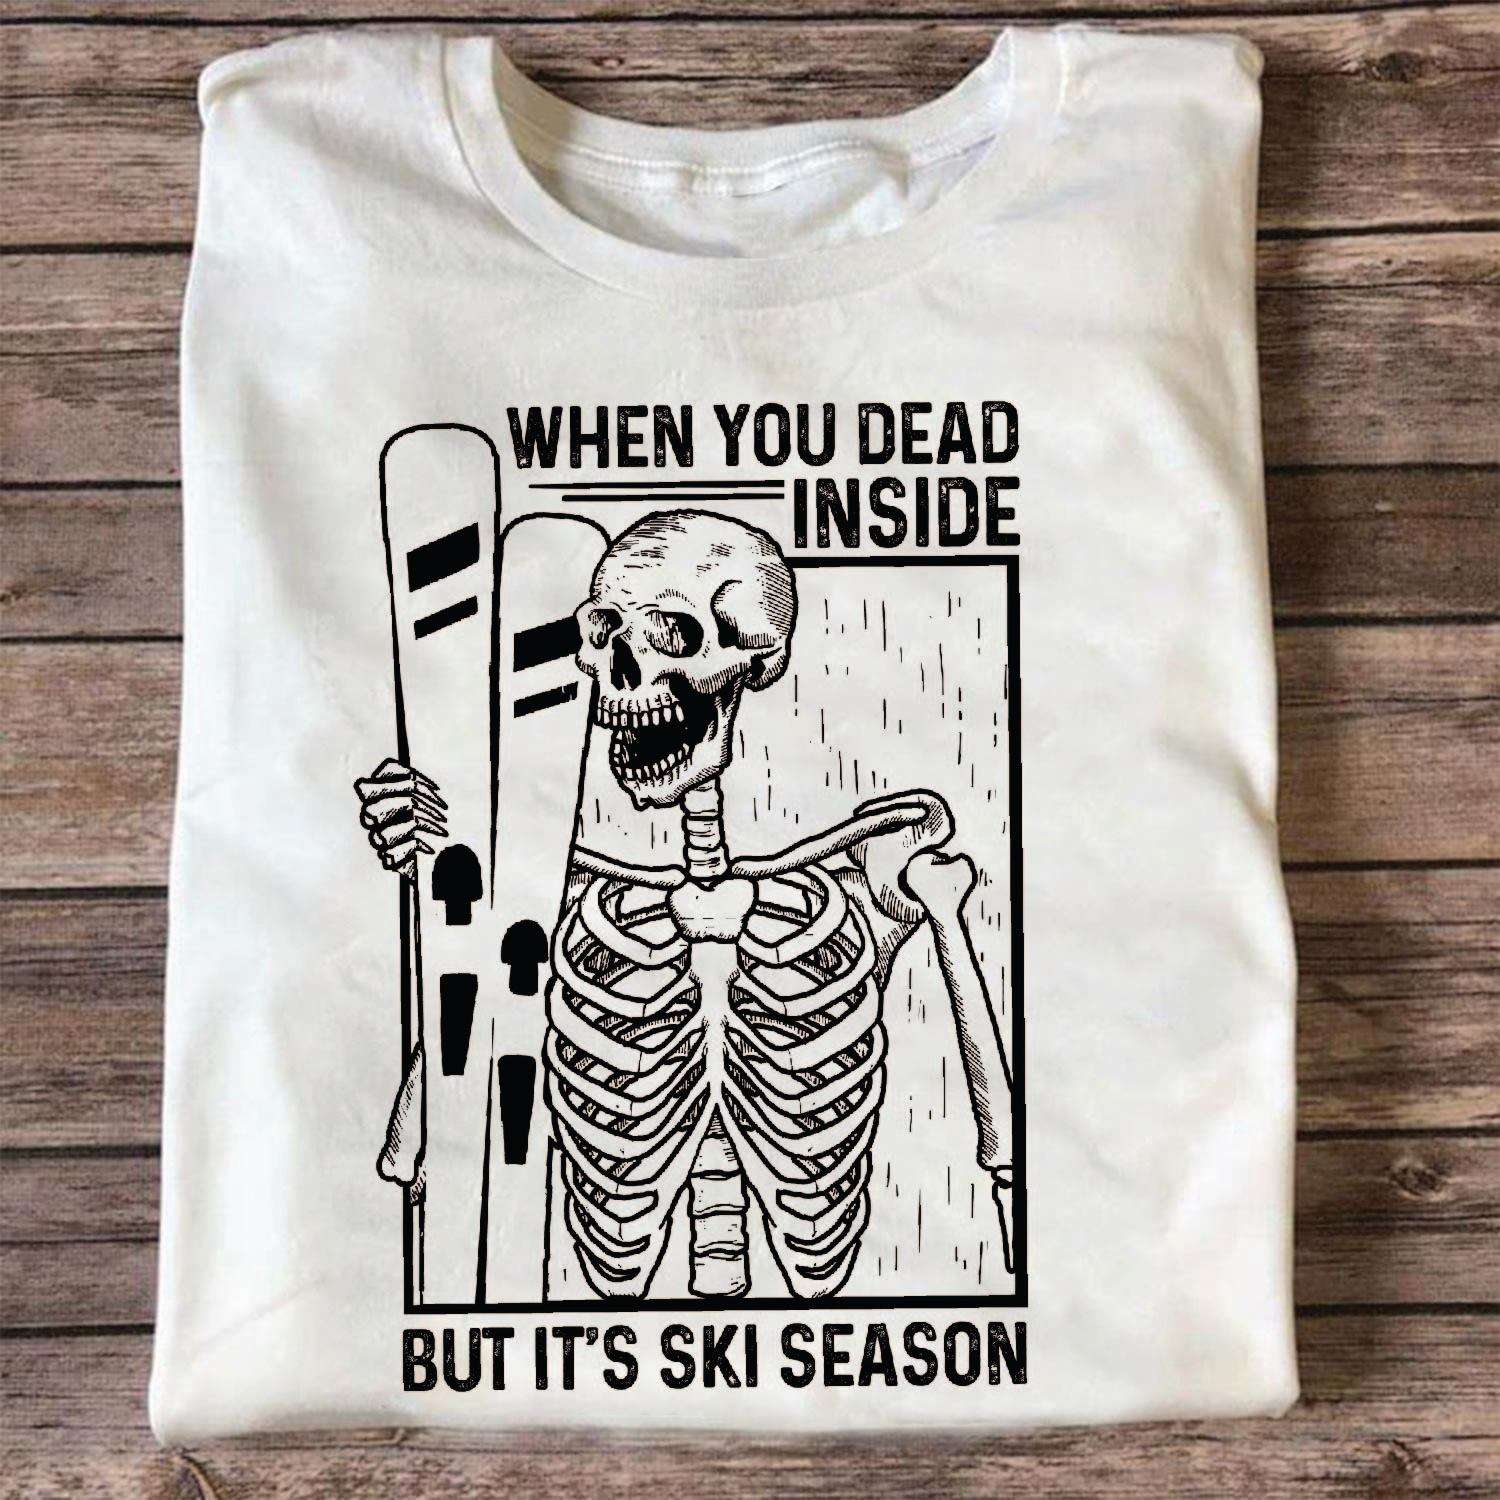 When you dead inside but it's ski season - Skull go skiing, Halloween gift for Halloween